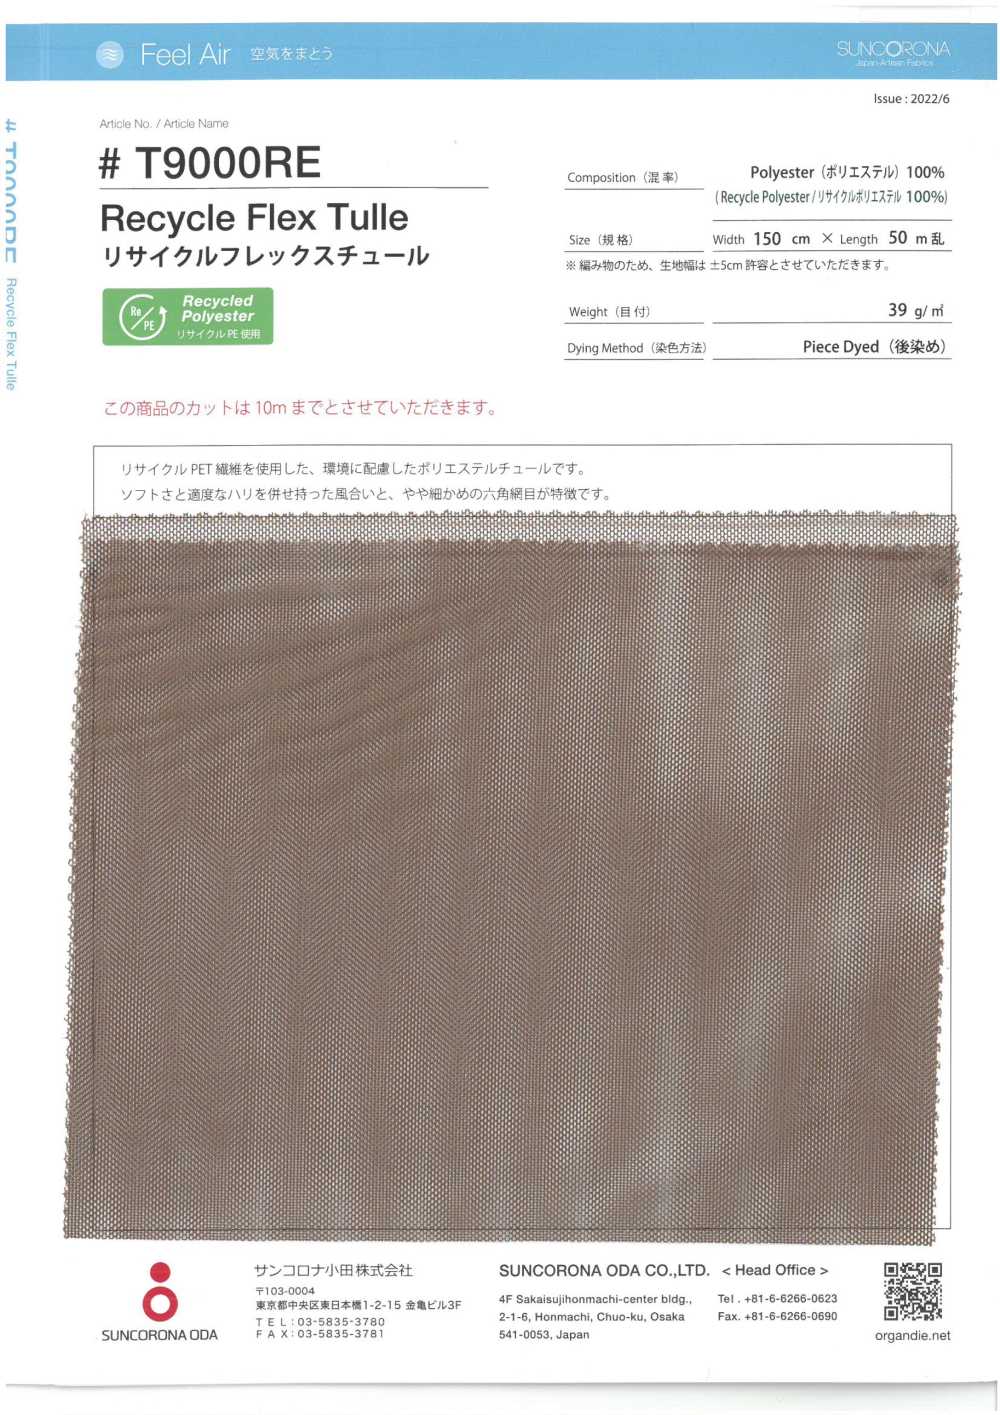 T9000RE Tul Flex Reciclado[Fabrica Textil] Suncorona Oda